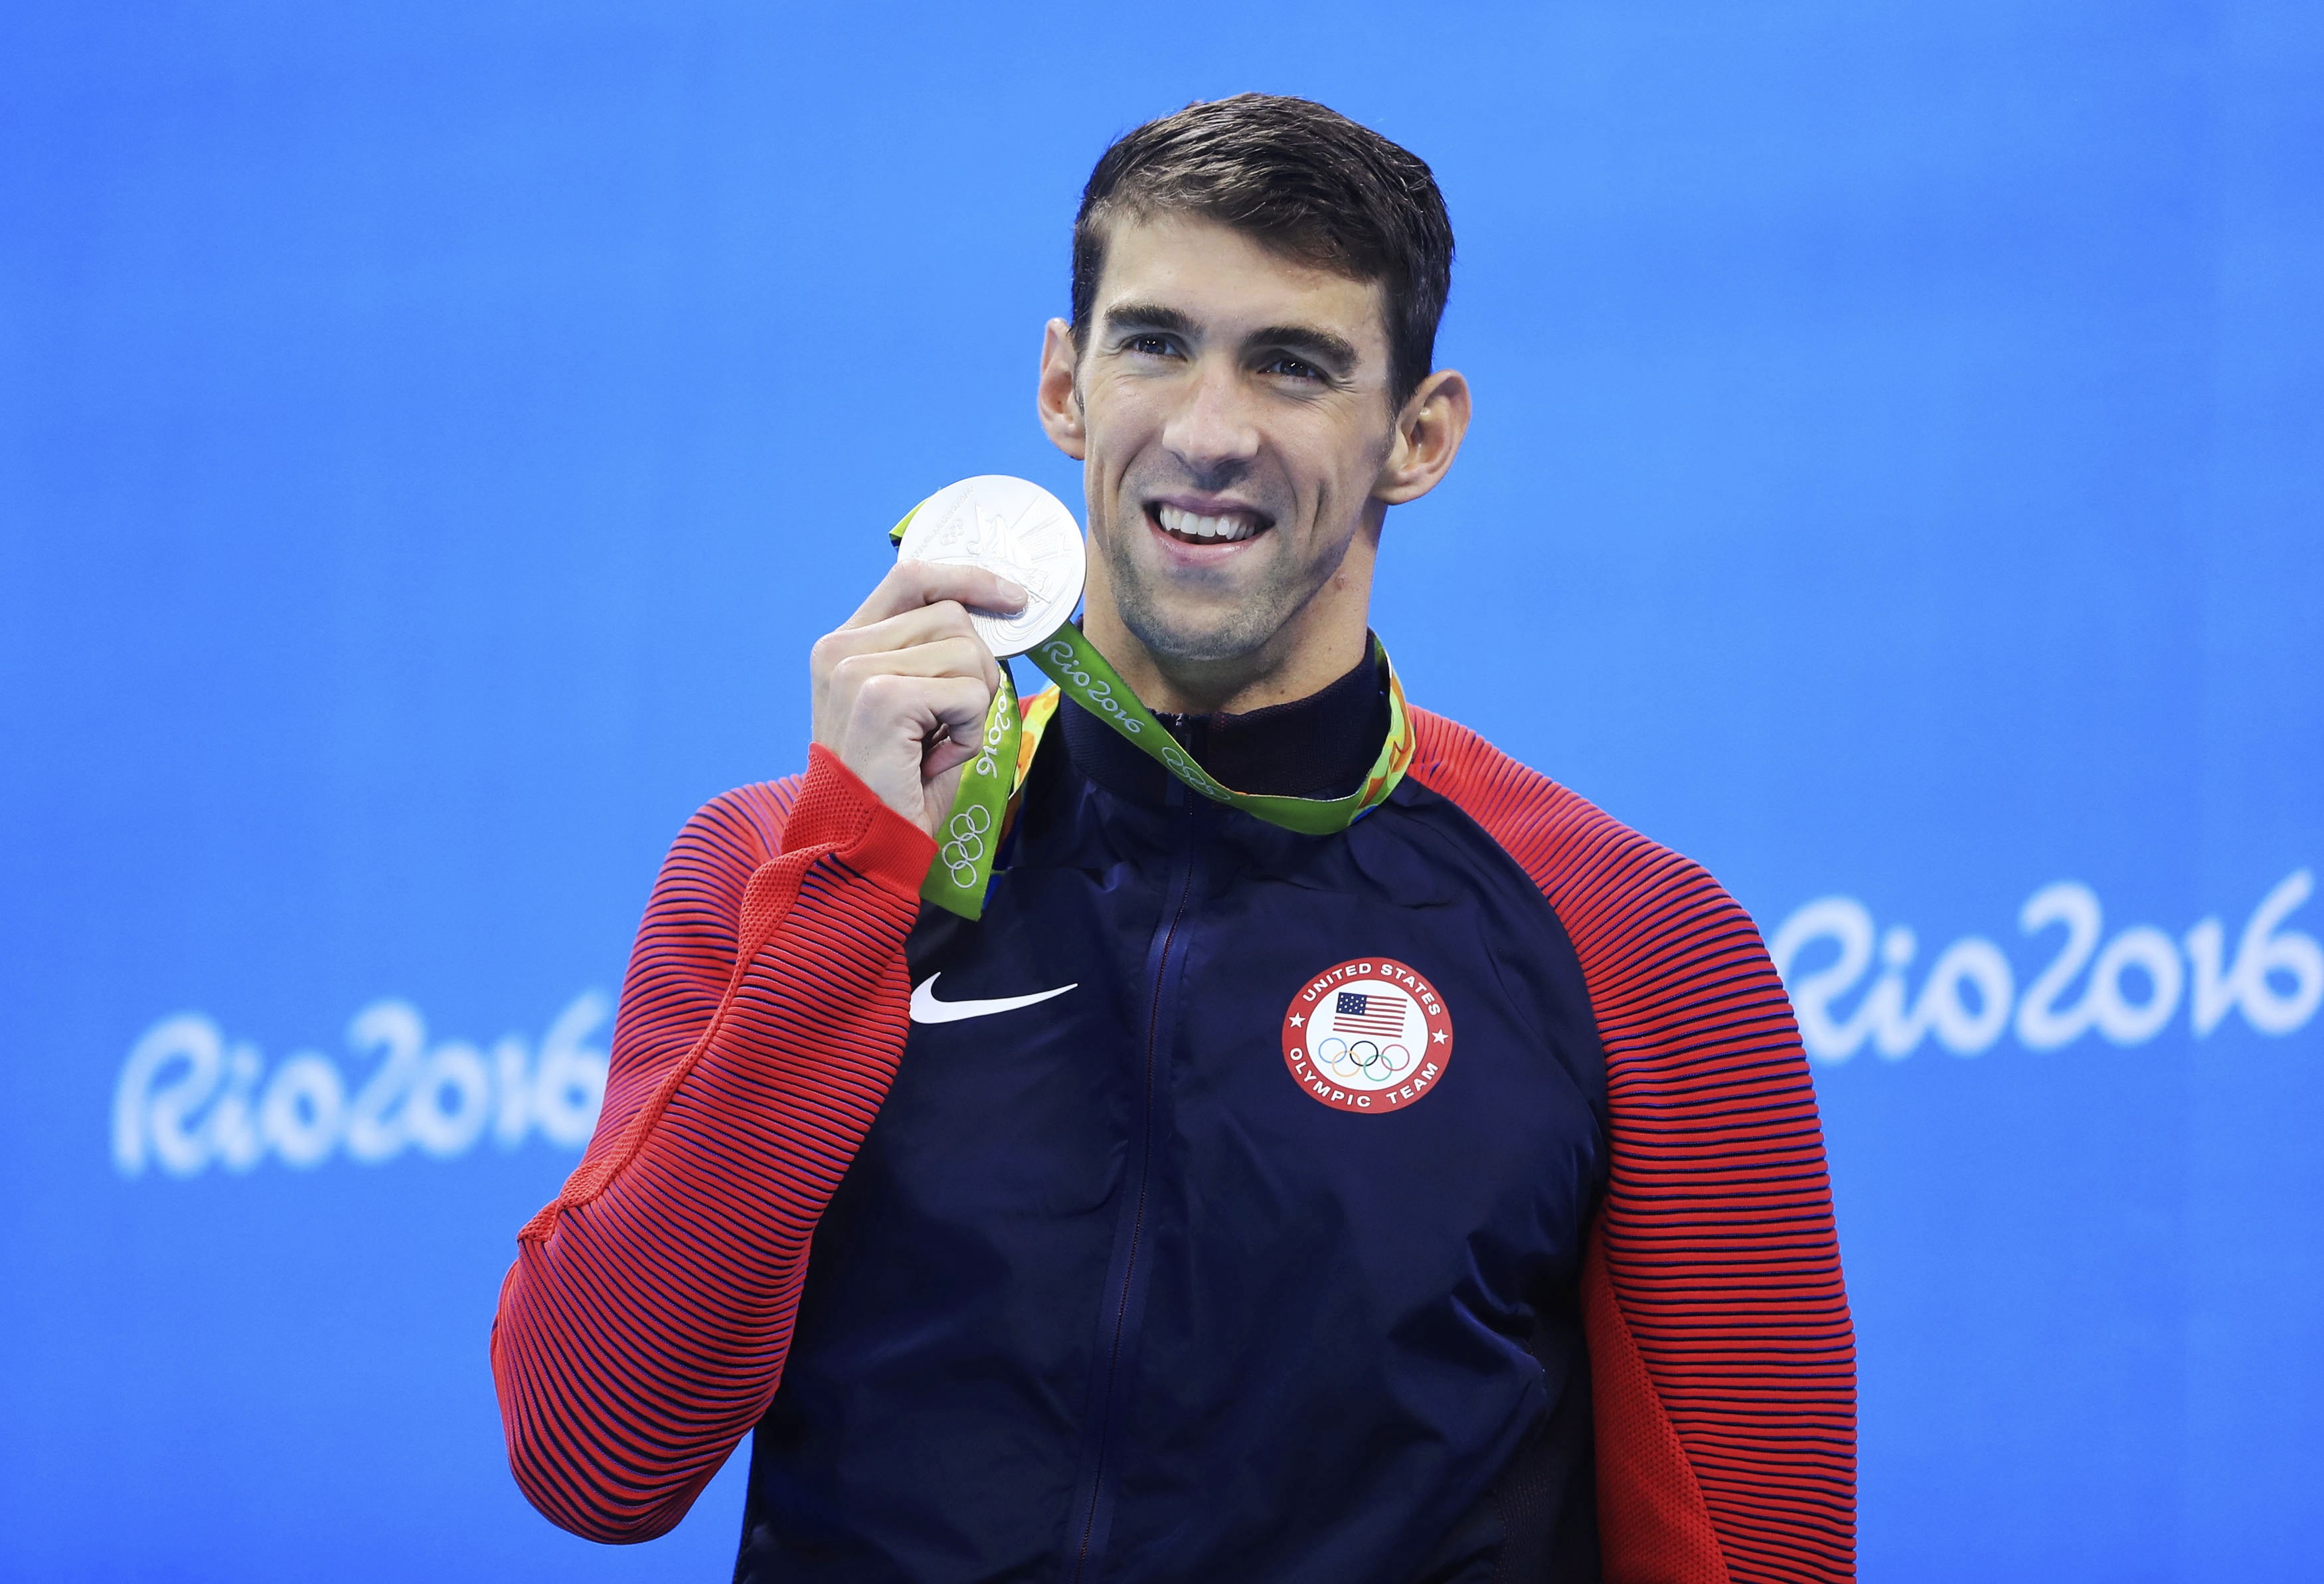 La leyenda Michael Phelps culmina su carrera olímpica con 23 medallas doradas